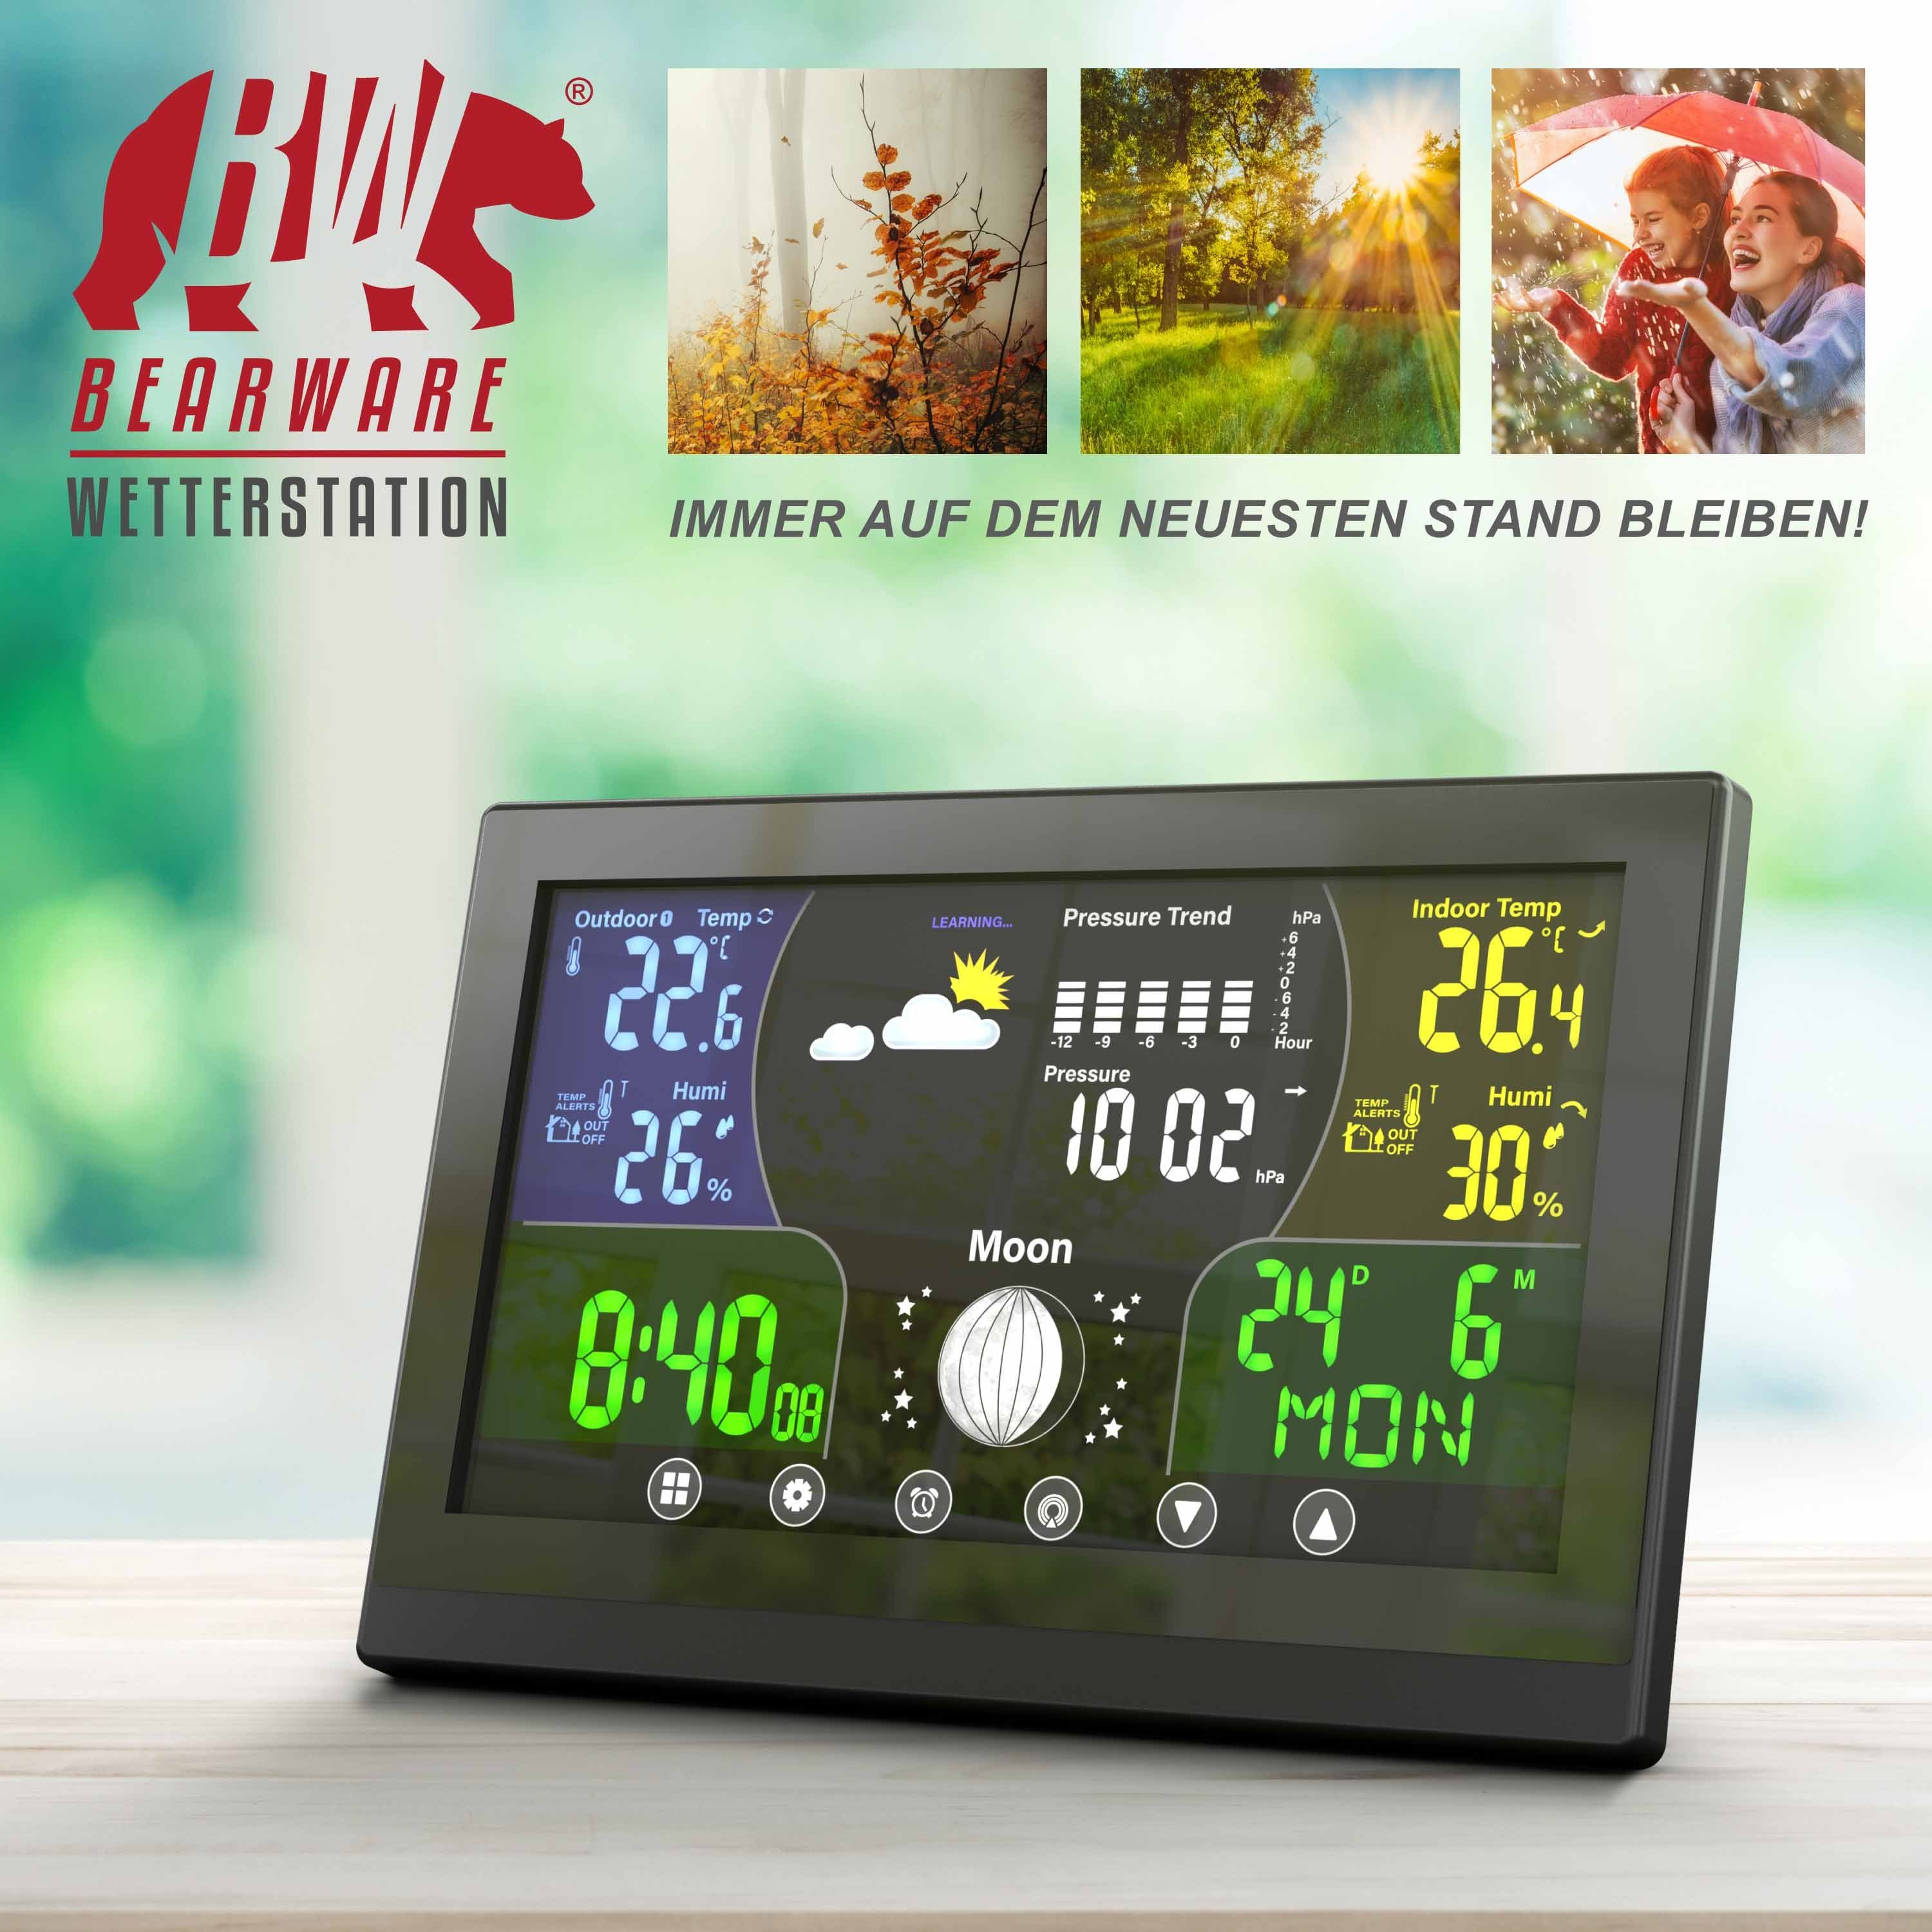 BEARWARE Wetterstation (mit Luftdruck LCD mit / Außensensor, mit Farbdisplay Höhenkorrektur)